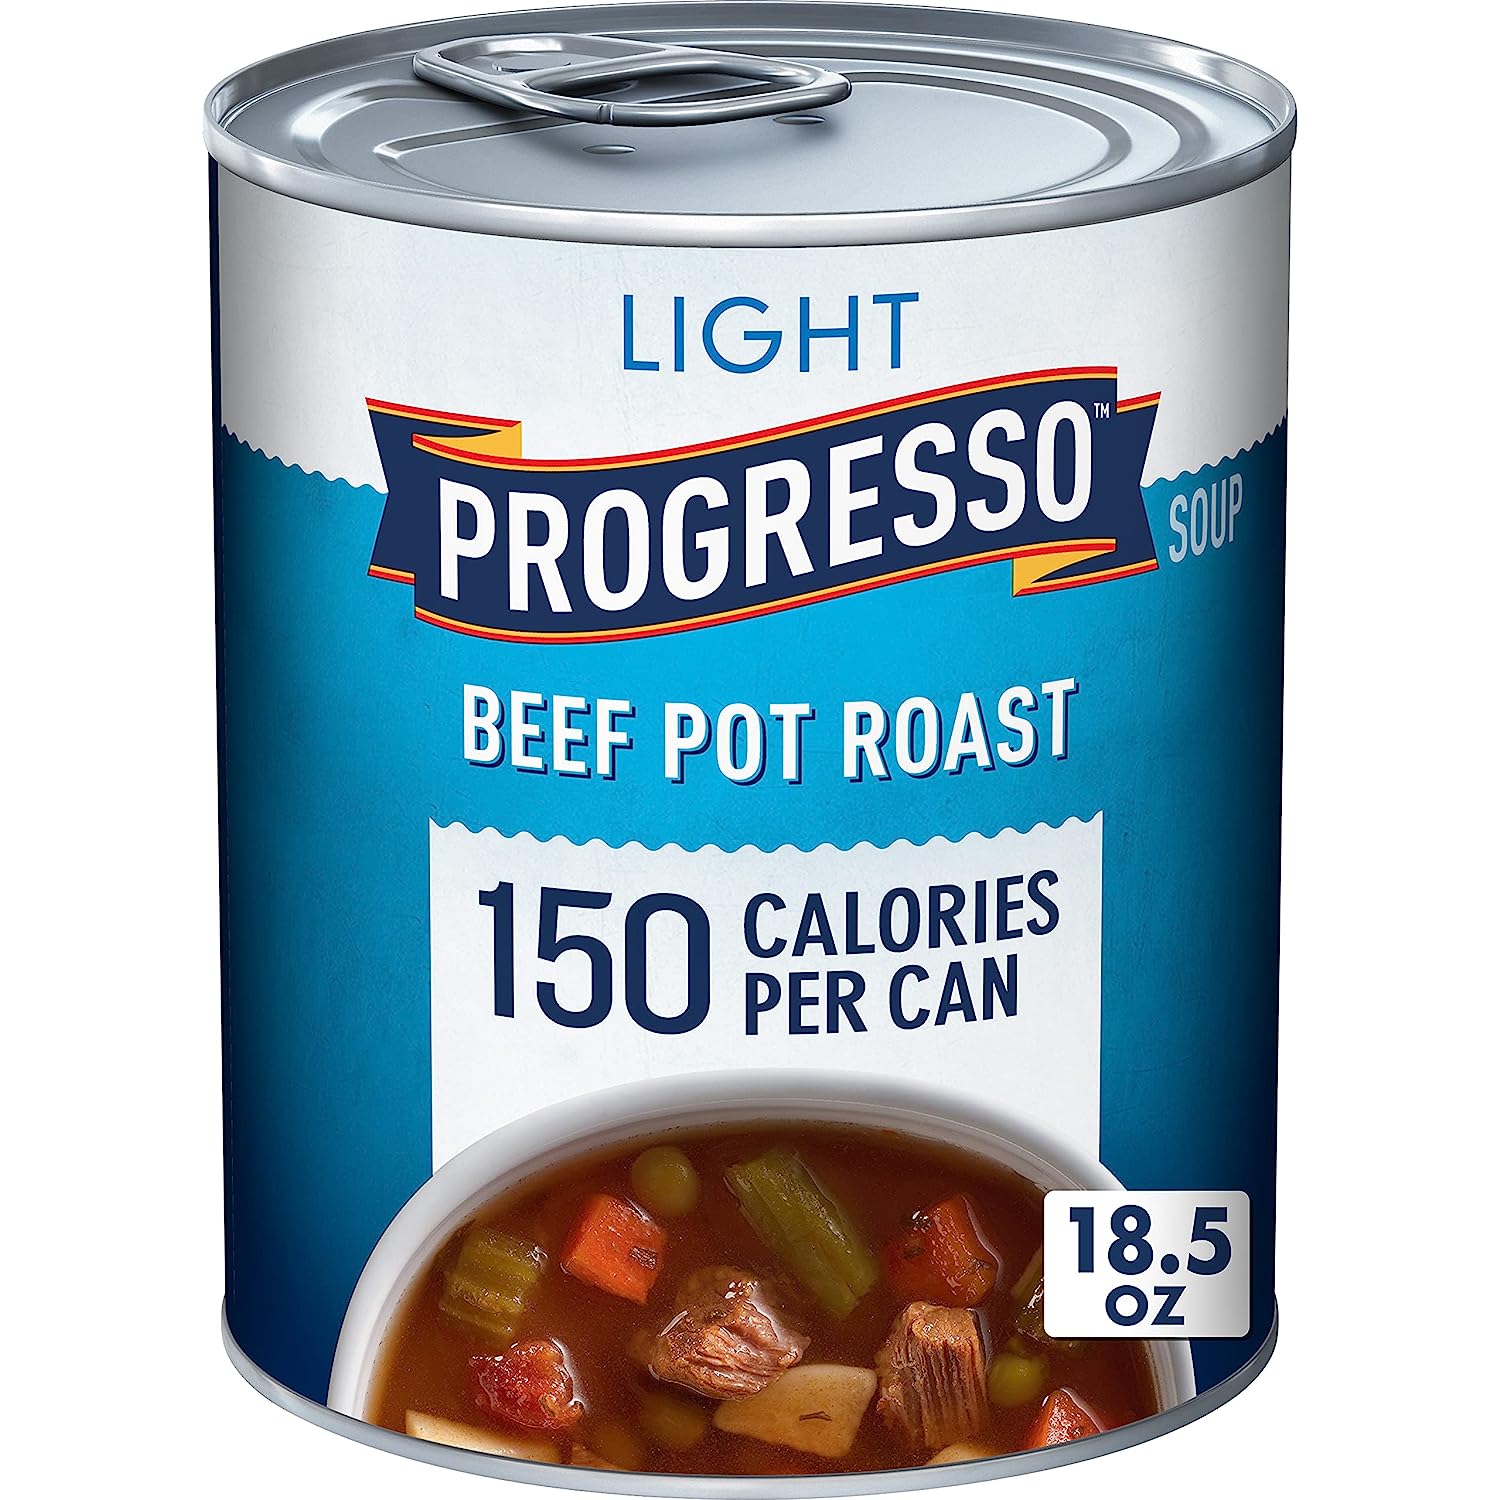 Progresso Light Soup, Beef Pot Roast, Gluten Free, 18.5 oz